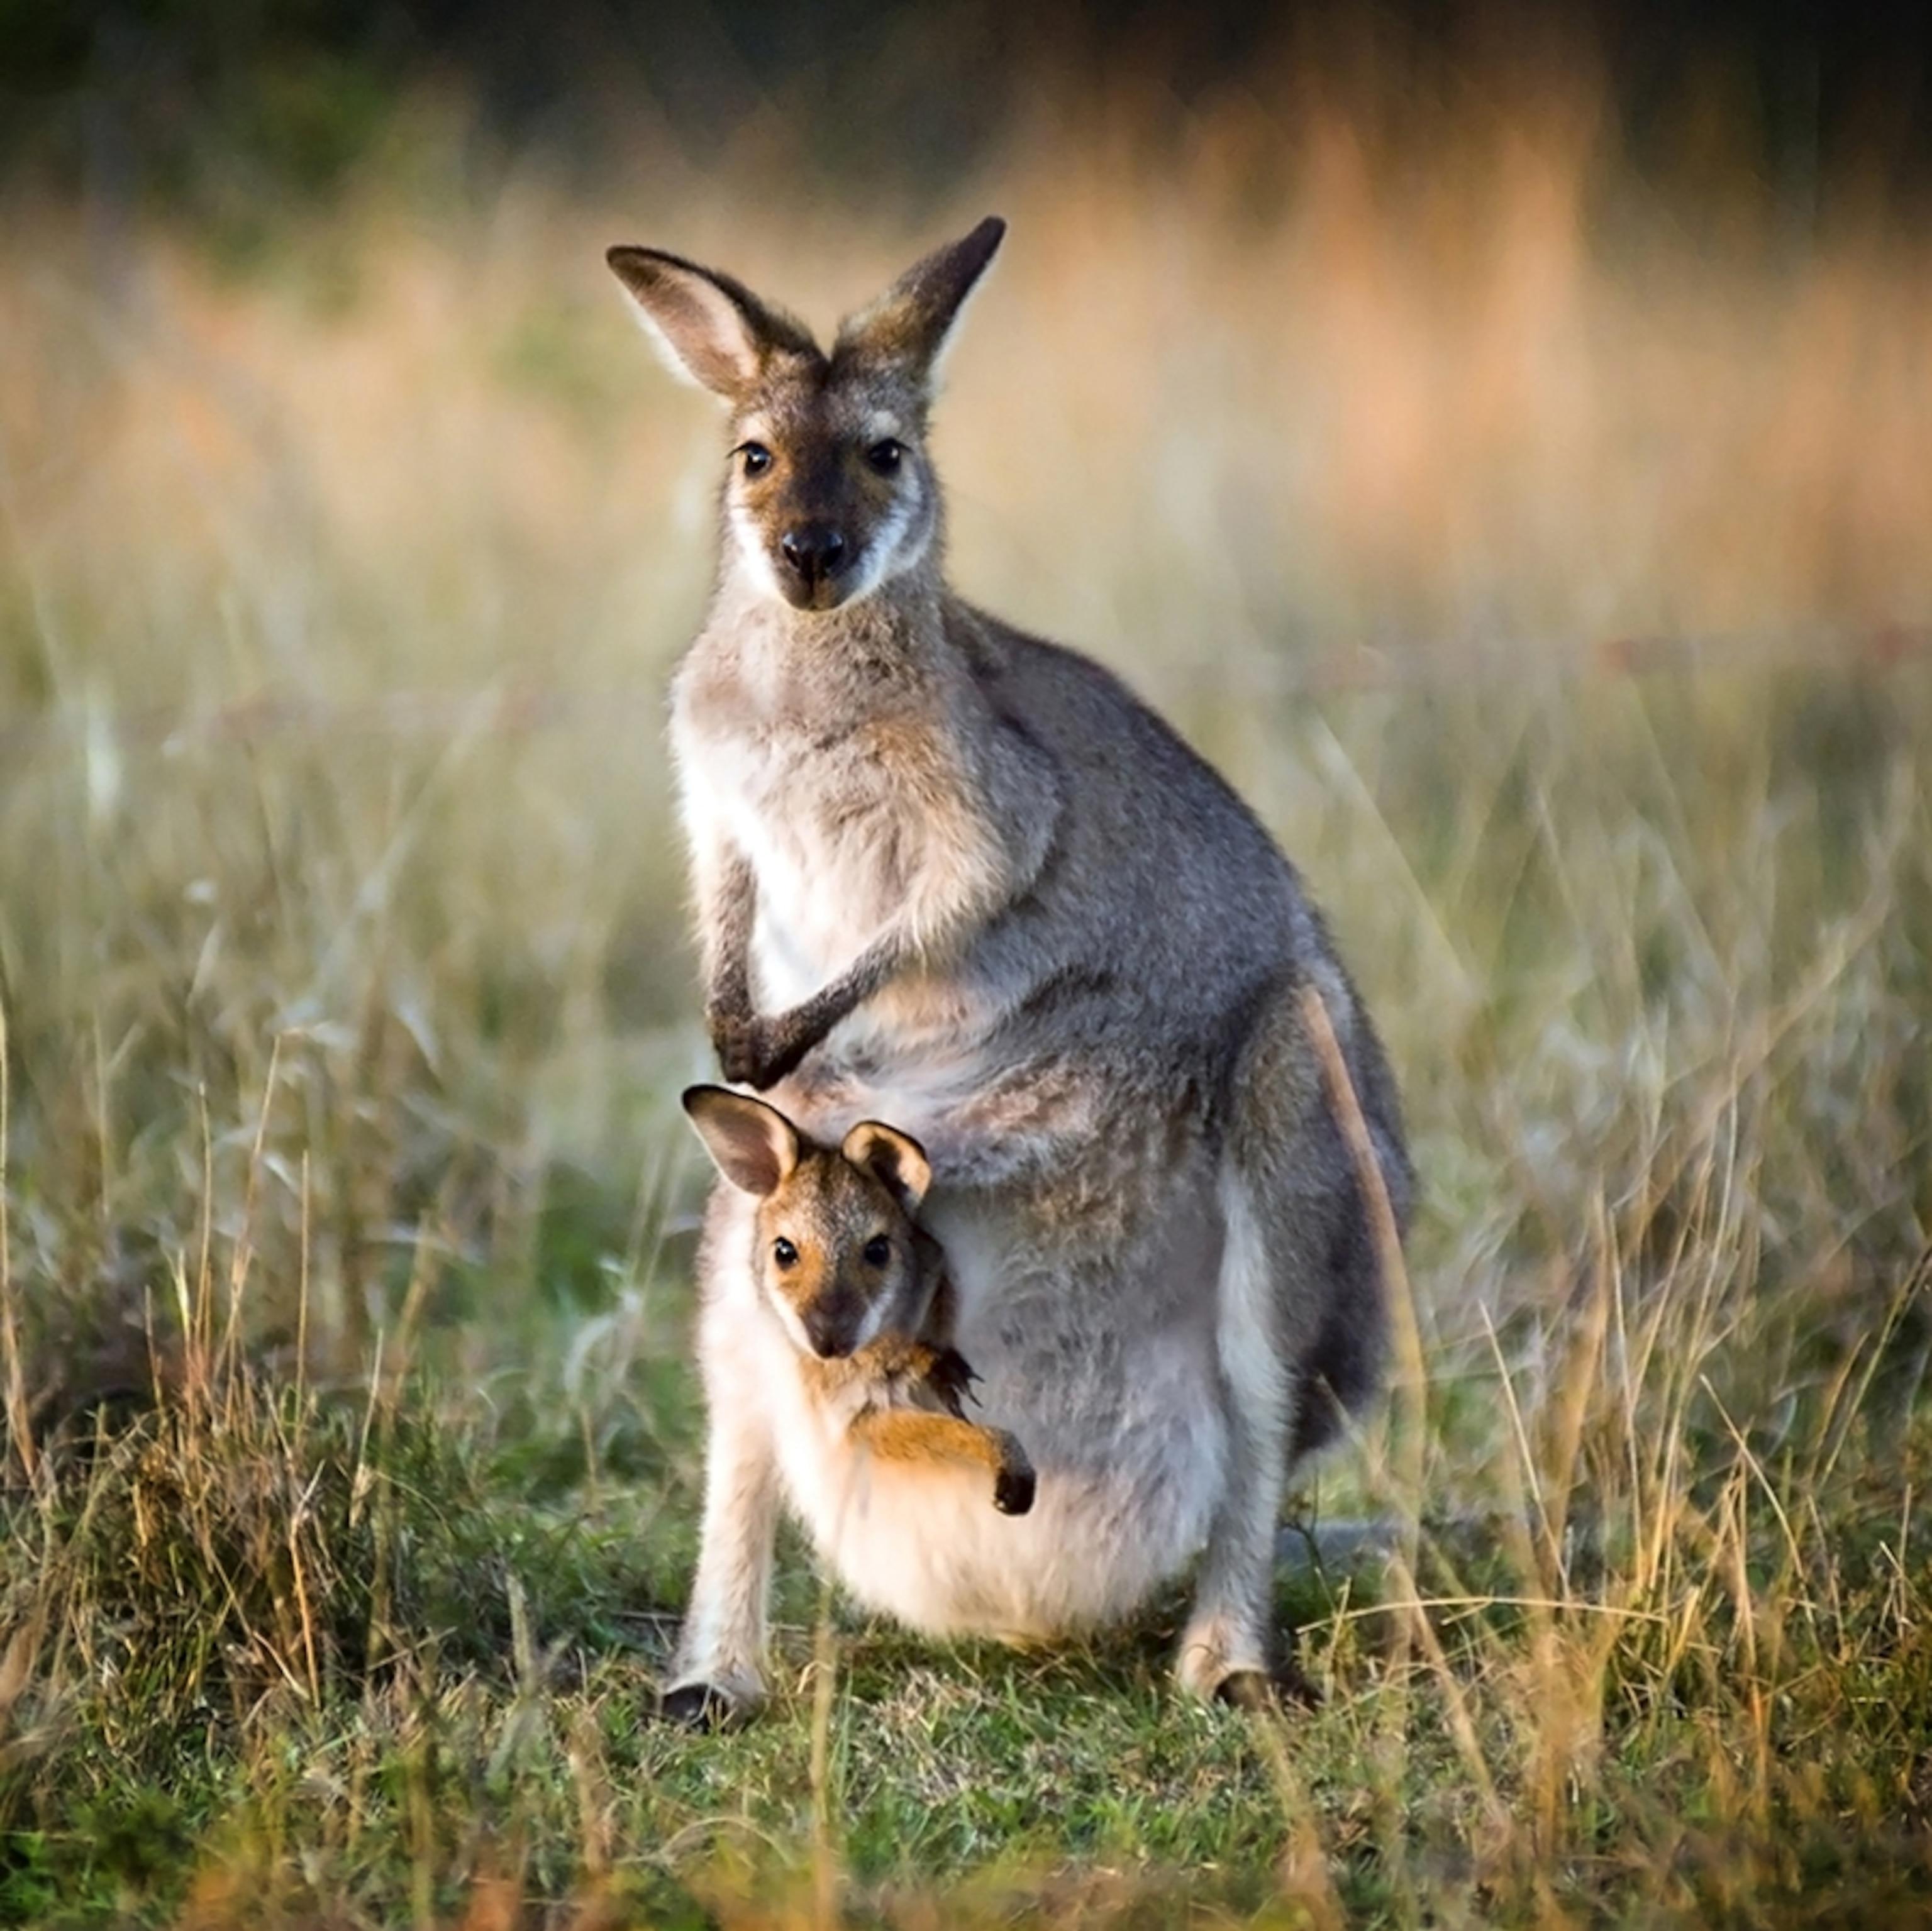 Kangaroo facts and photos